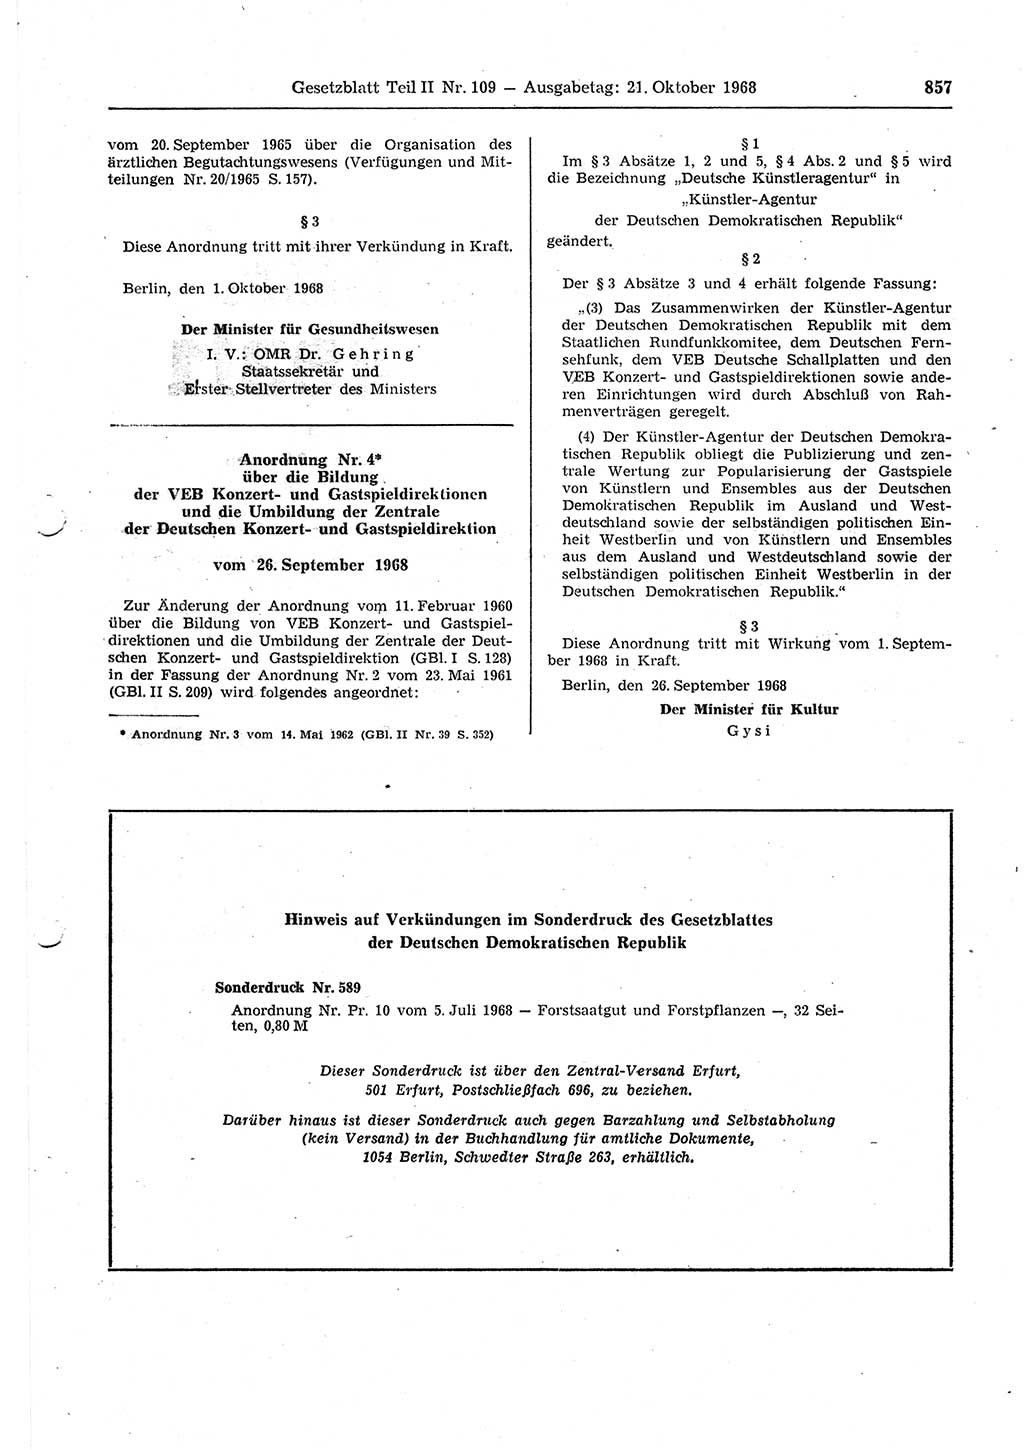 Gesetzblatt (GBl.) der Deutschen Demokratischen Republik (DDR) Teil ⅠⅠ 1968, Seite 857 (GBl. DDR ⅠⅠ 1968, S. 857)